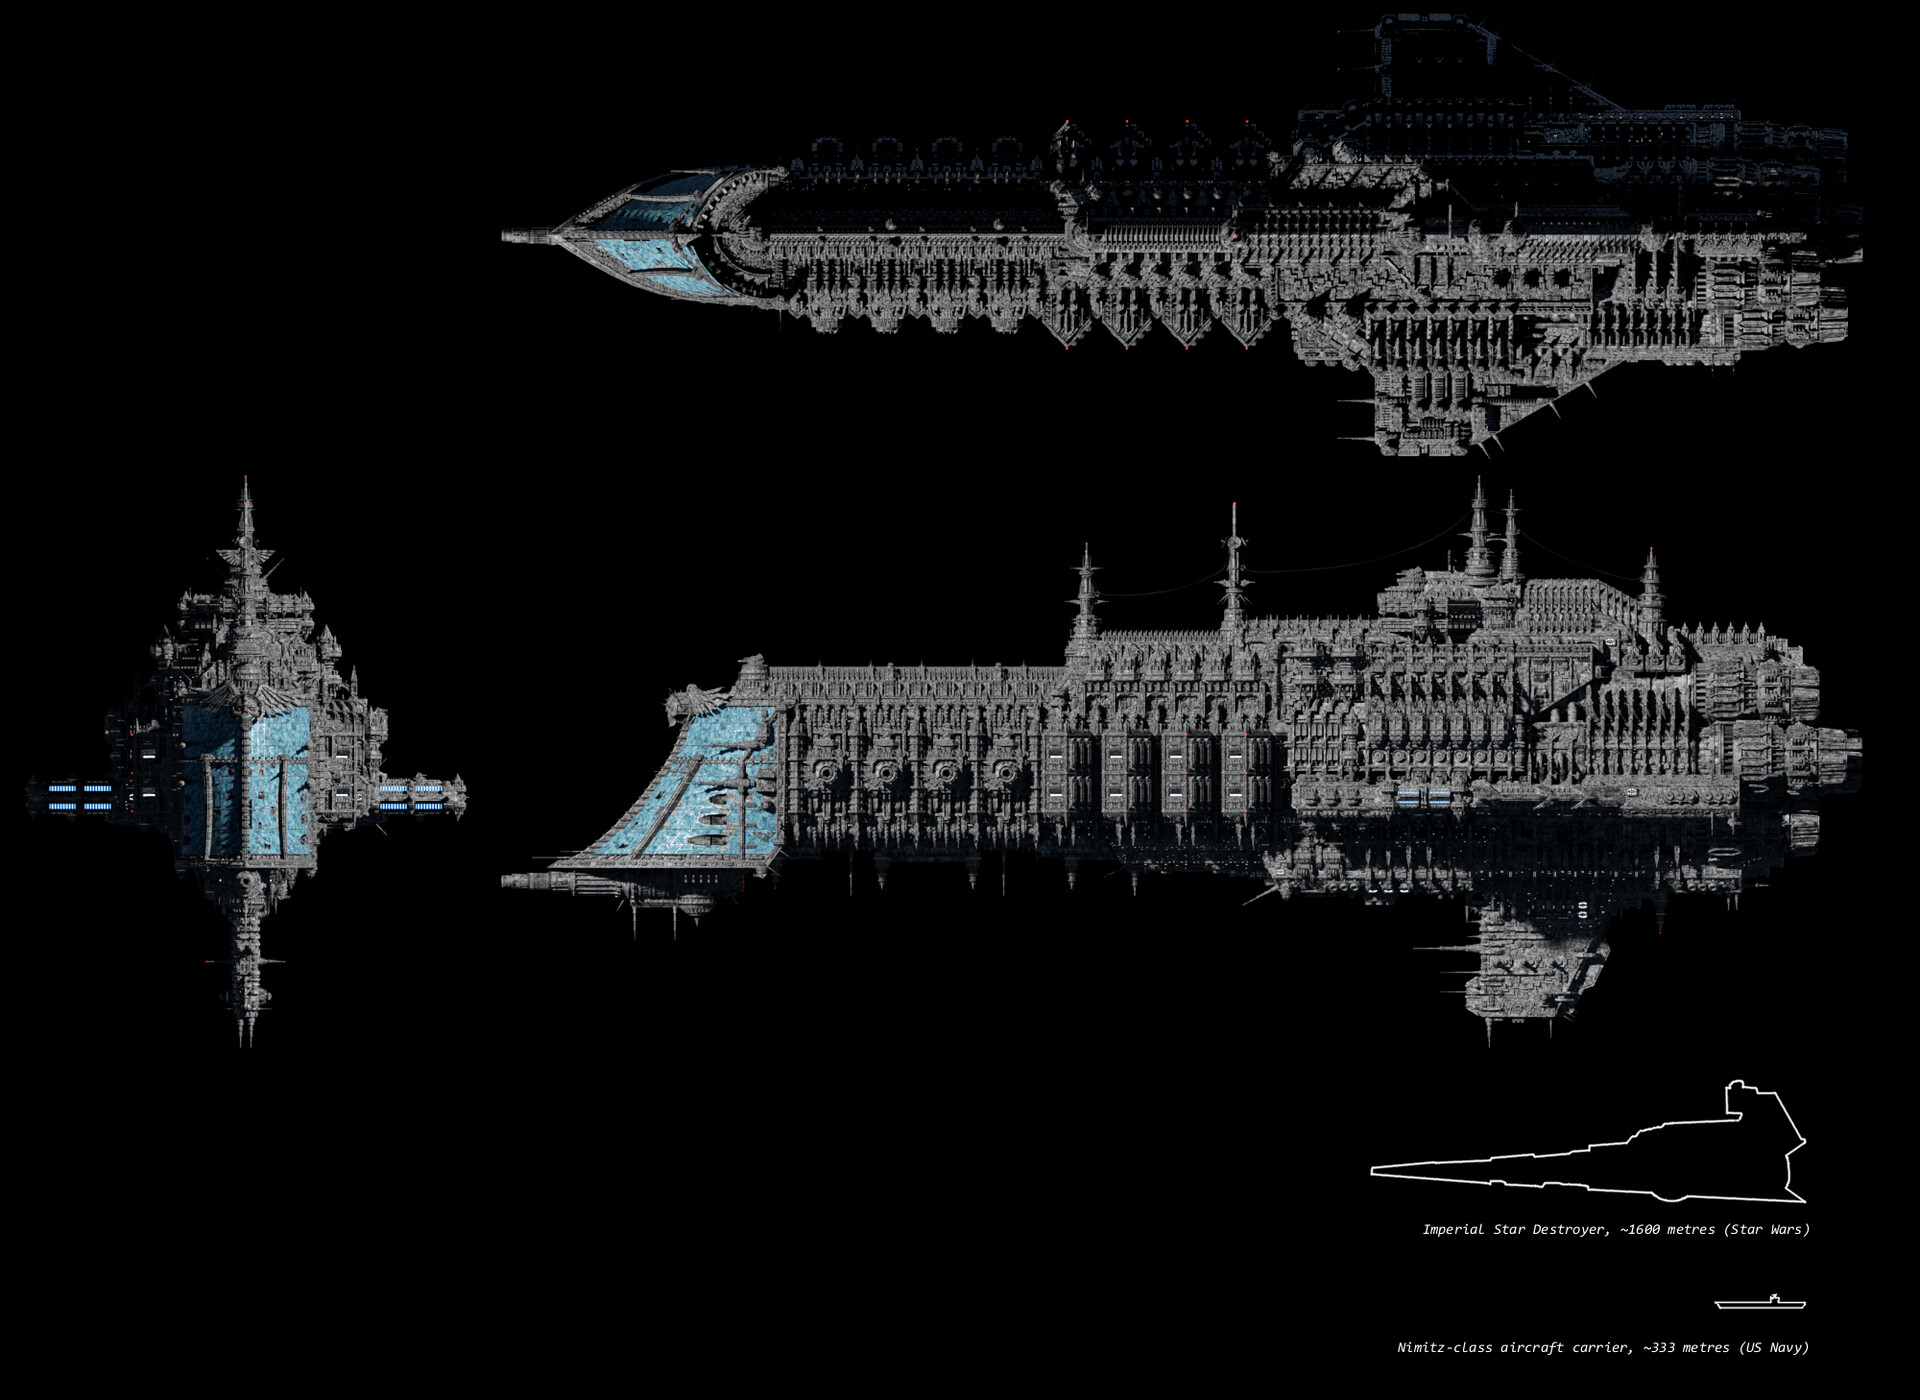 ArtStation - Dictator-class Imperial battlecruiser, Warhammer 40,000